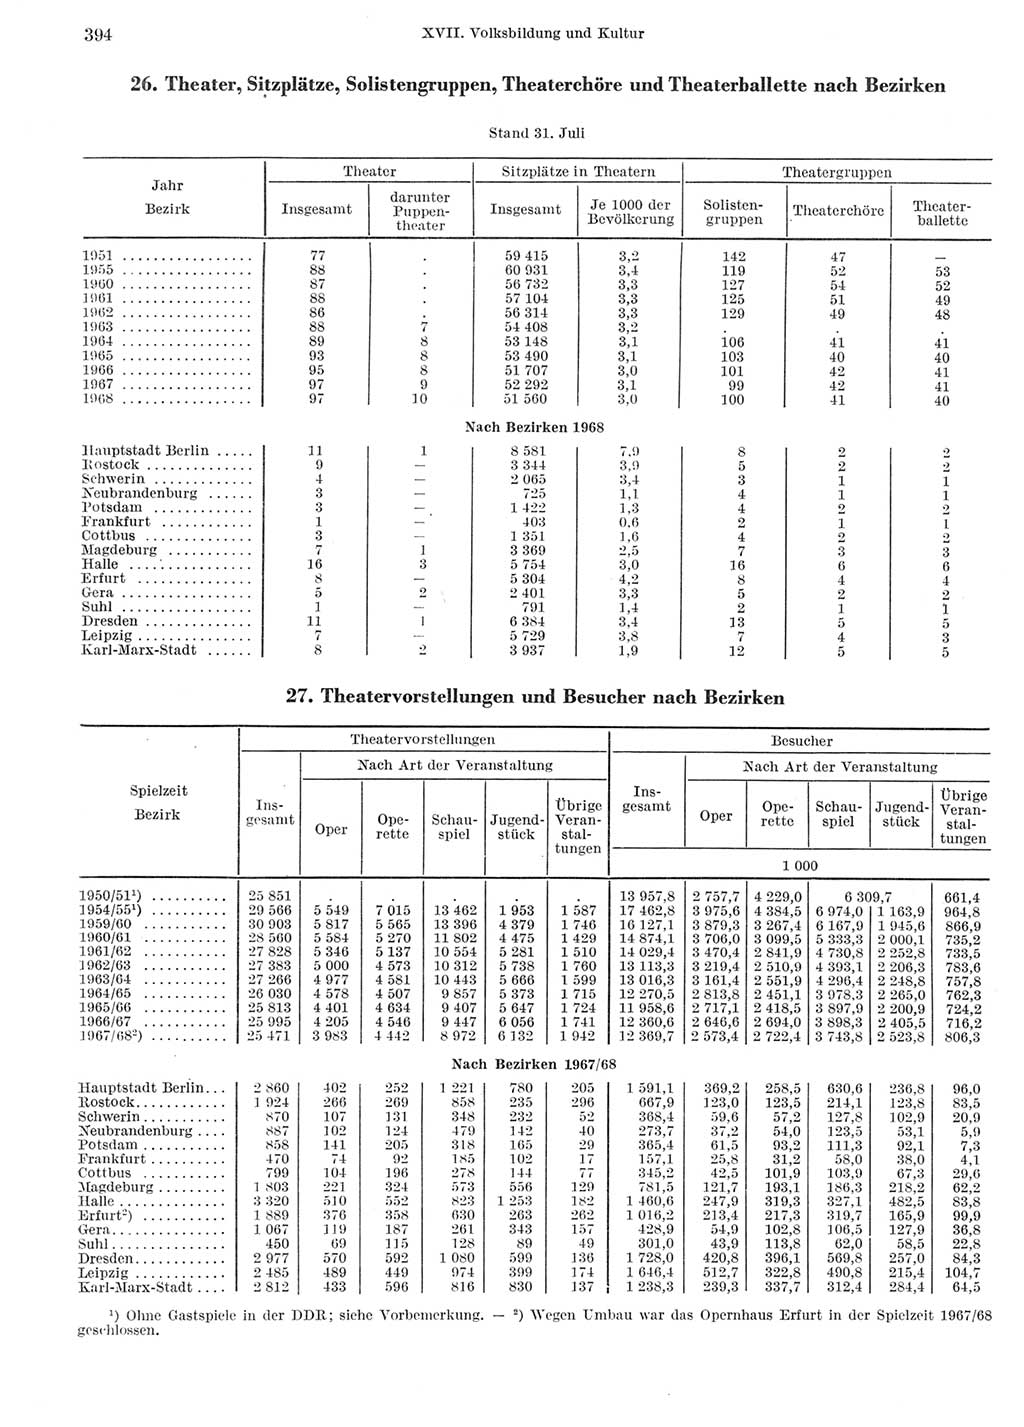 Statistisches Jahrbuch der Deutschen Demokratischen Republik (DDR) 1969, Seite 394 (Stat. Jb. DDR 1969, S. 394)